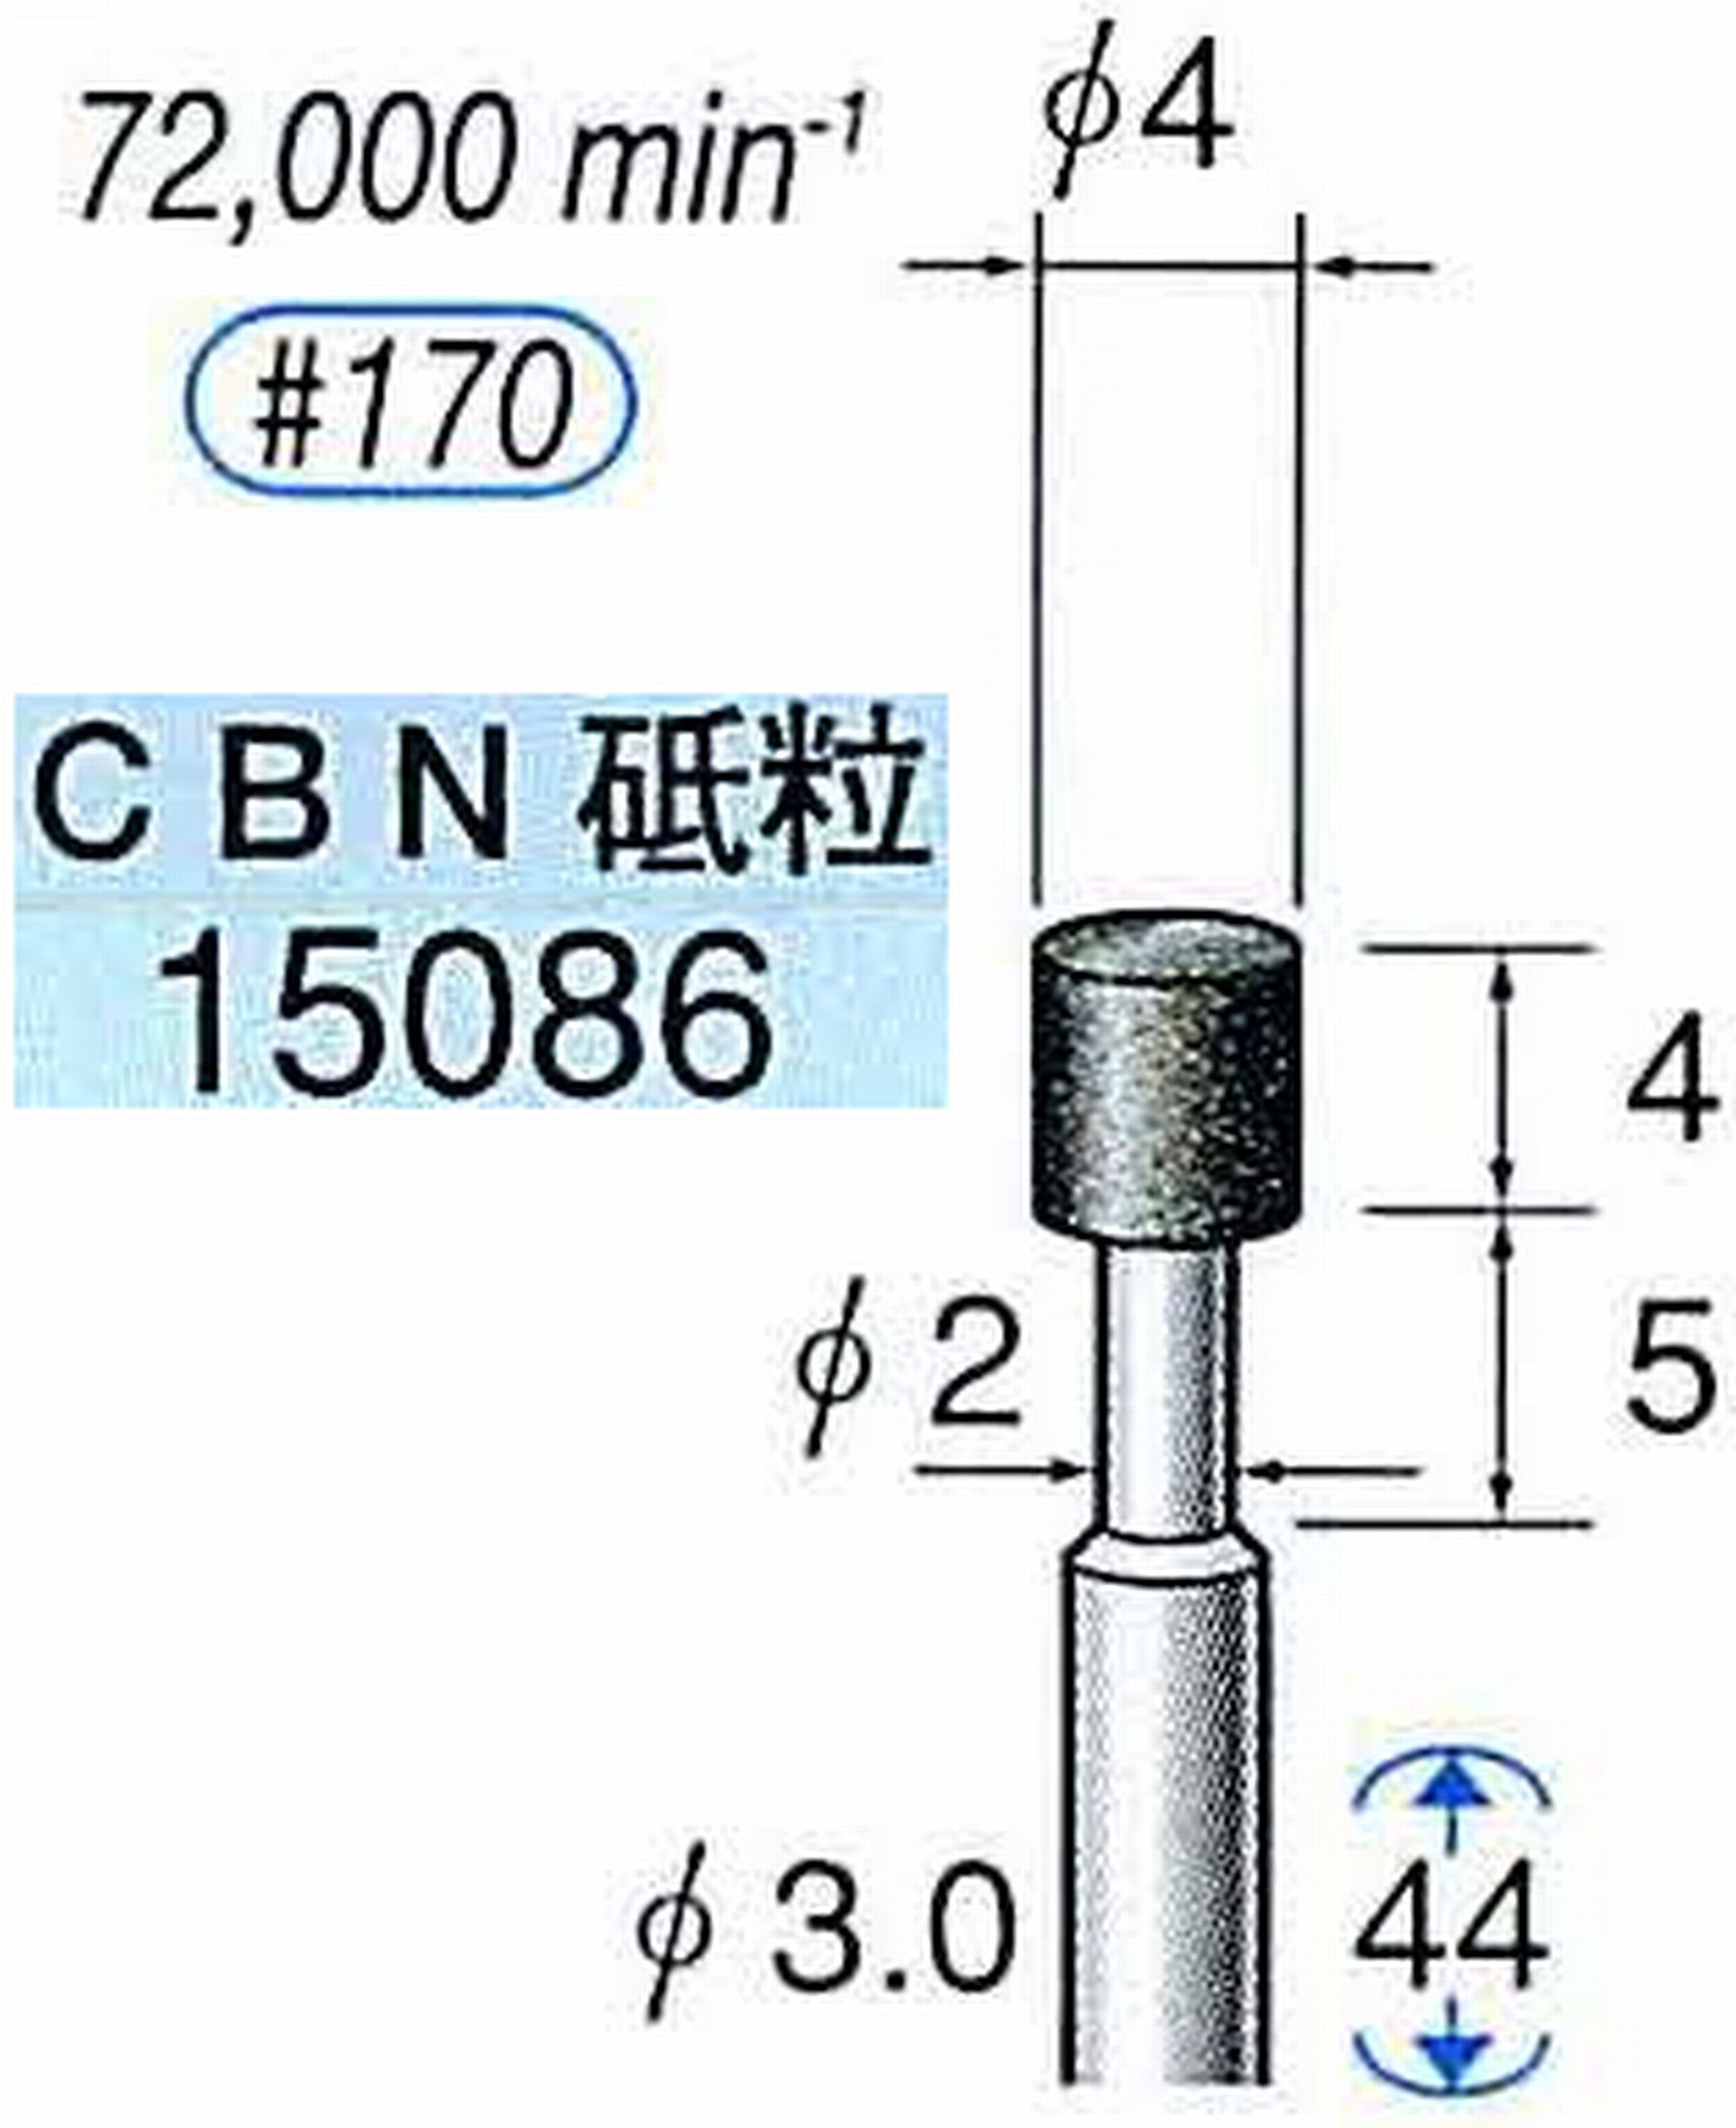 ナカニシ/NAKANISHI レジノイドダイヤモンド CBN砥粒 軸径(シャンク)φ3.0mm 15086